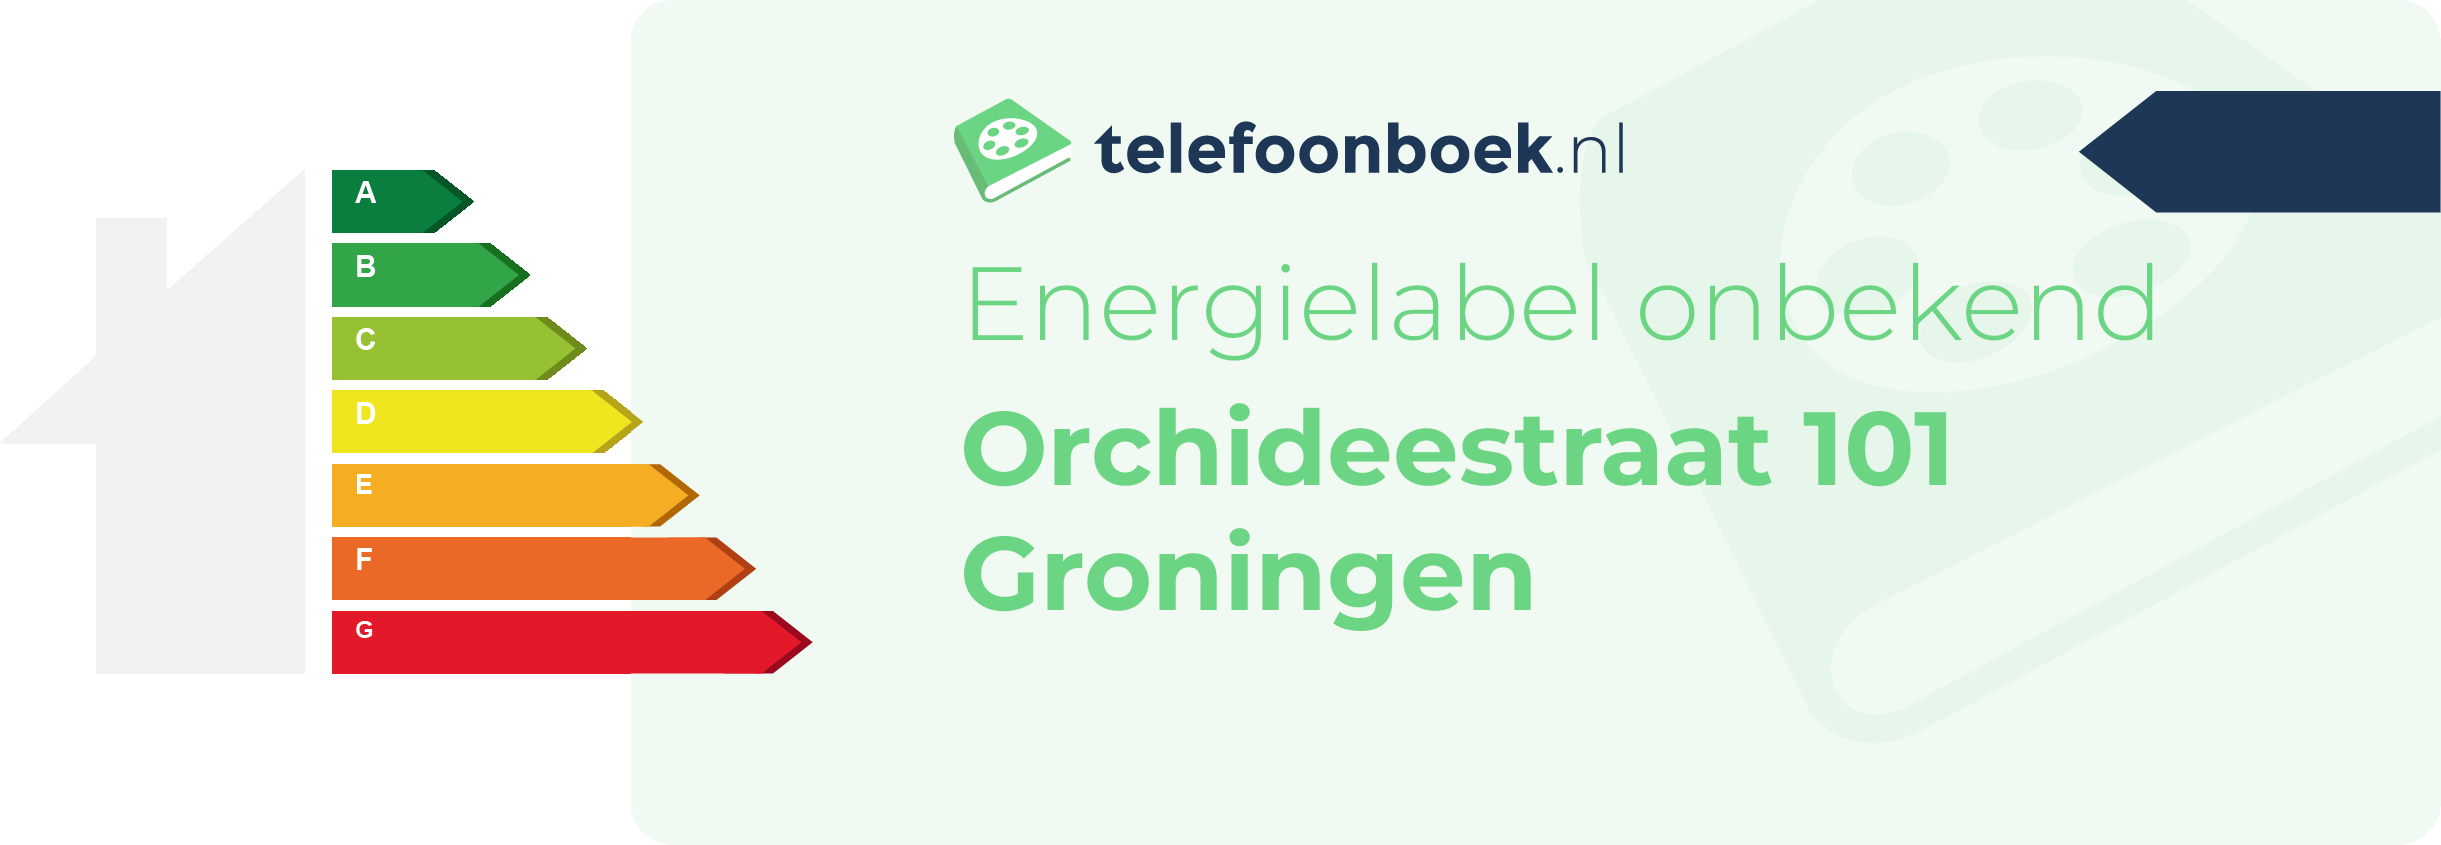 Energielabel Orchideestraat 101 Groningen